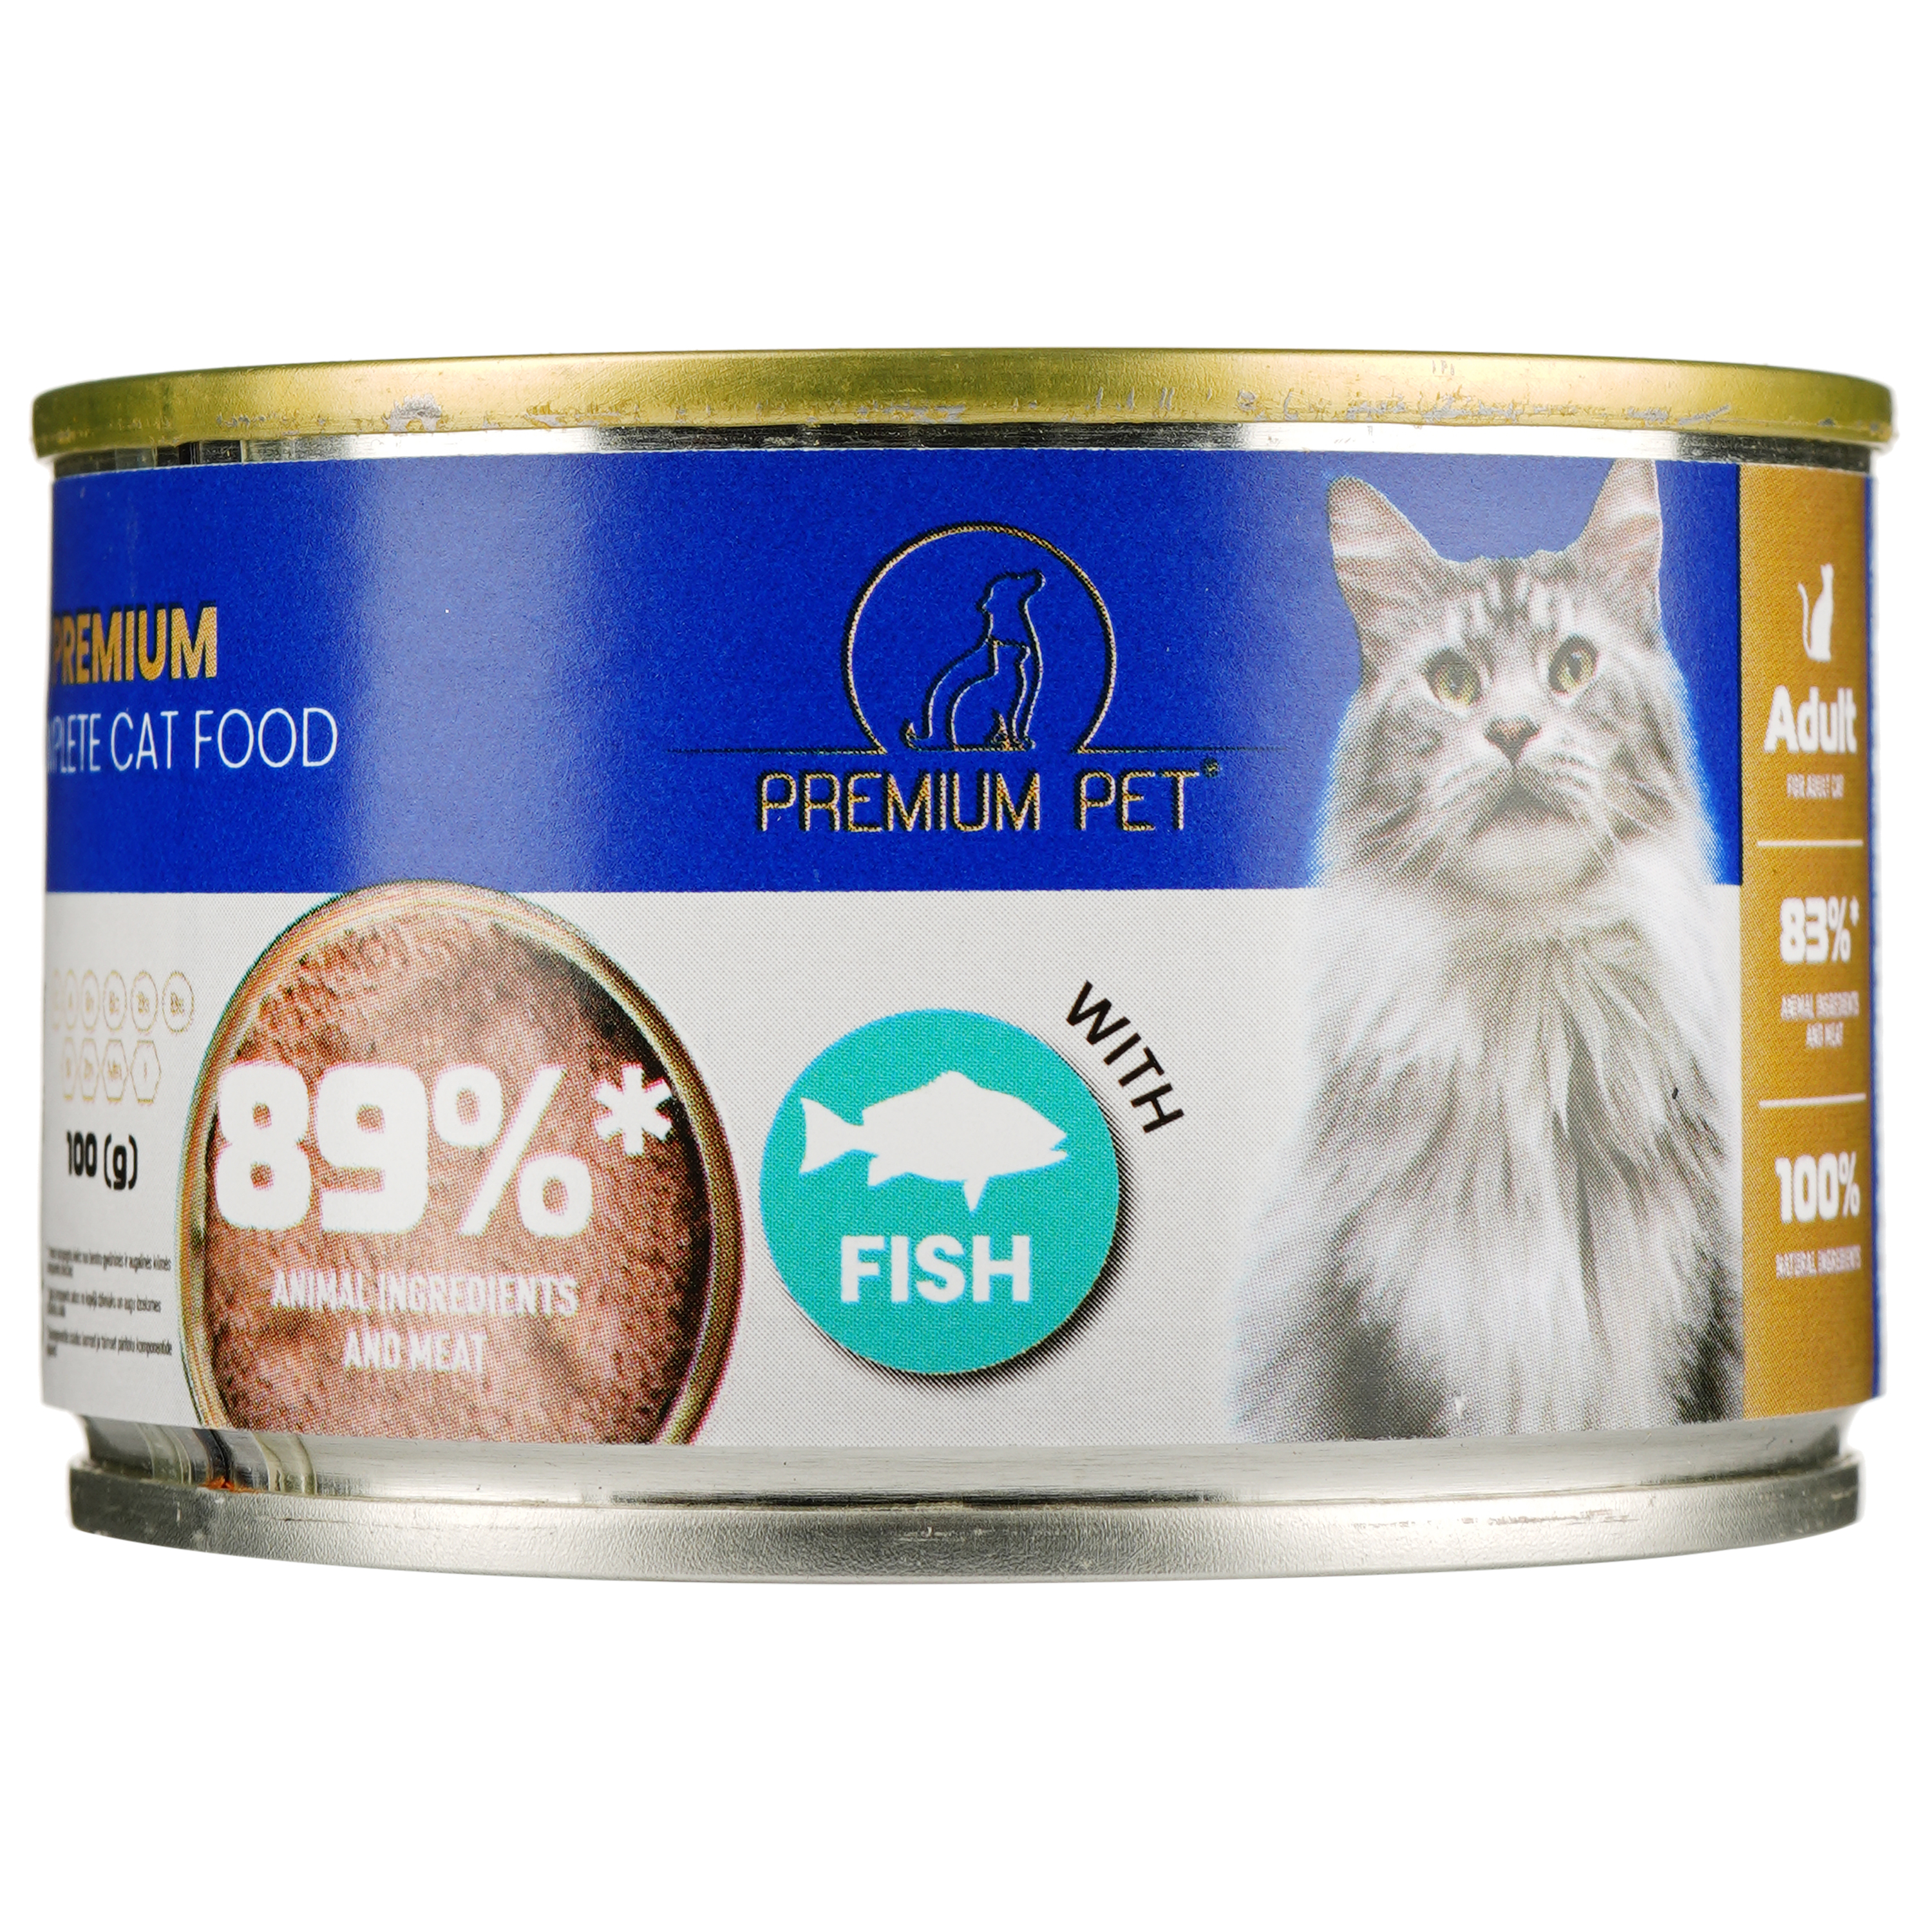 Паштет для дорослих котів Premium Pet з рибою 100 г - фото 2